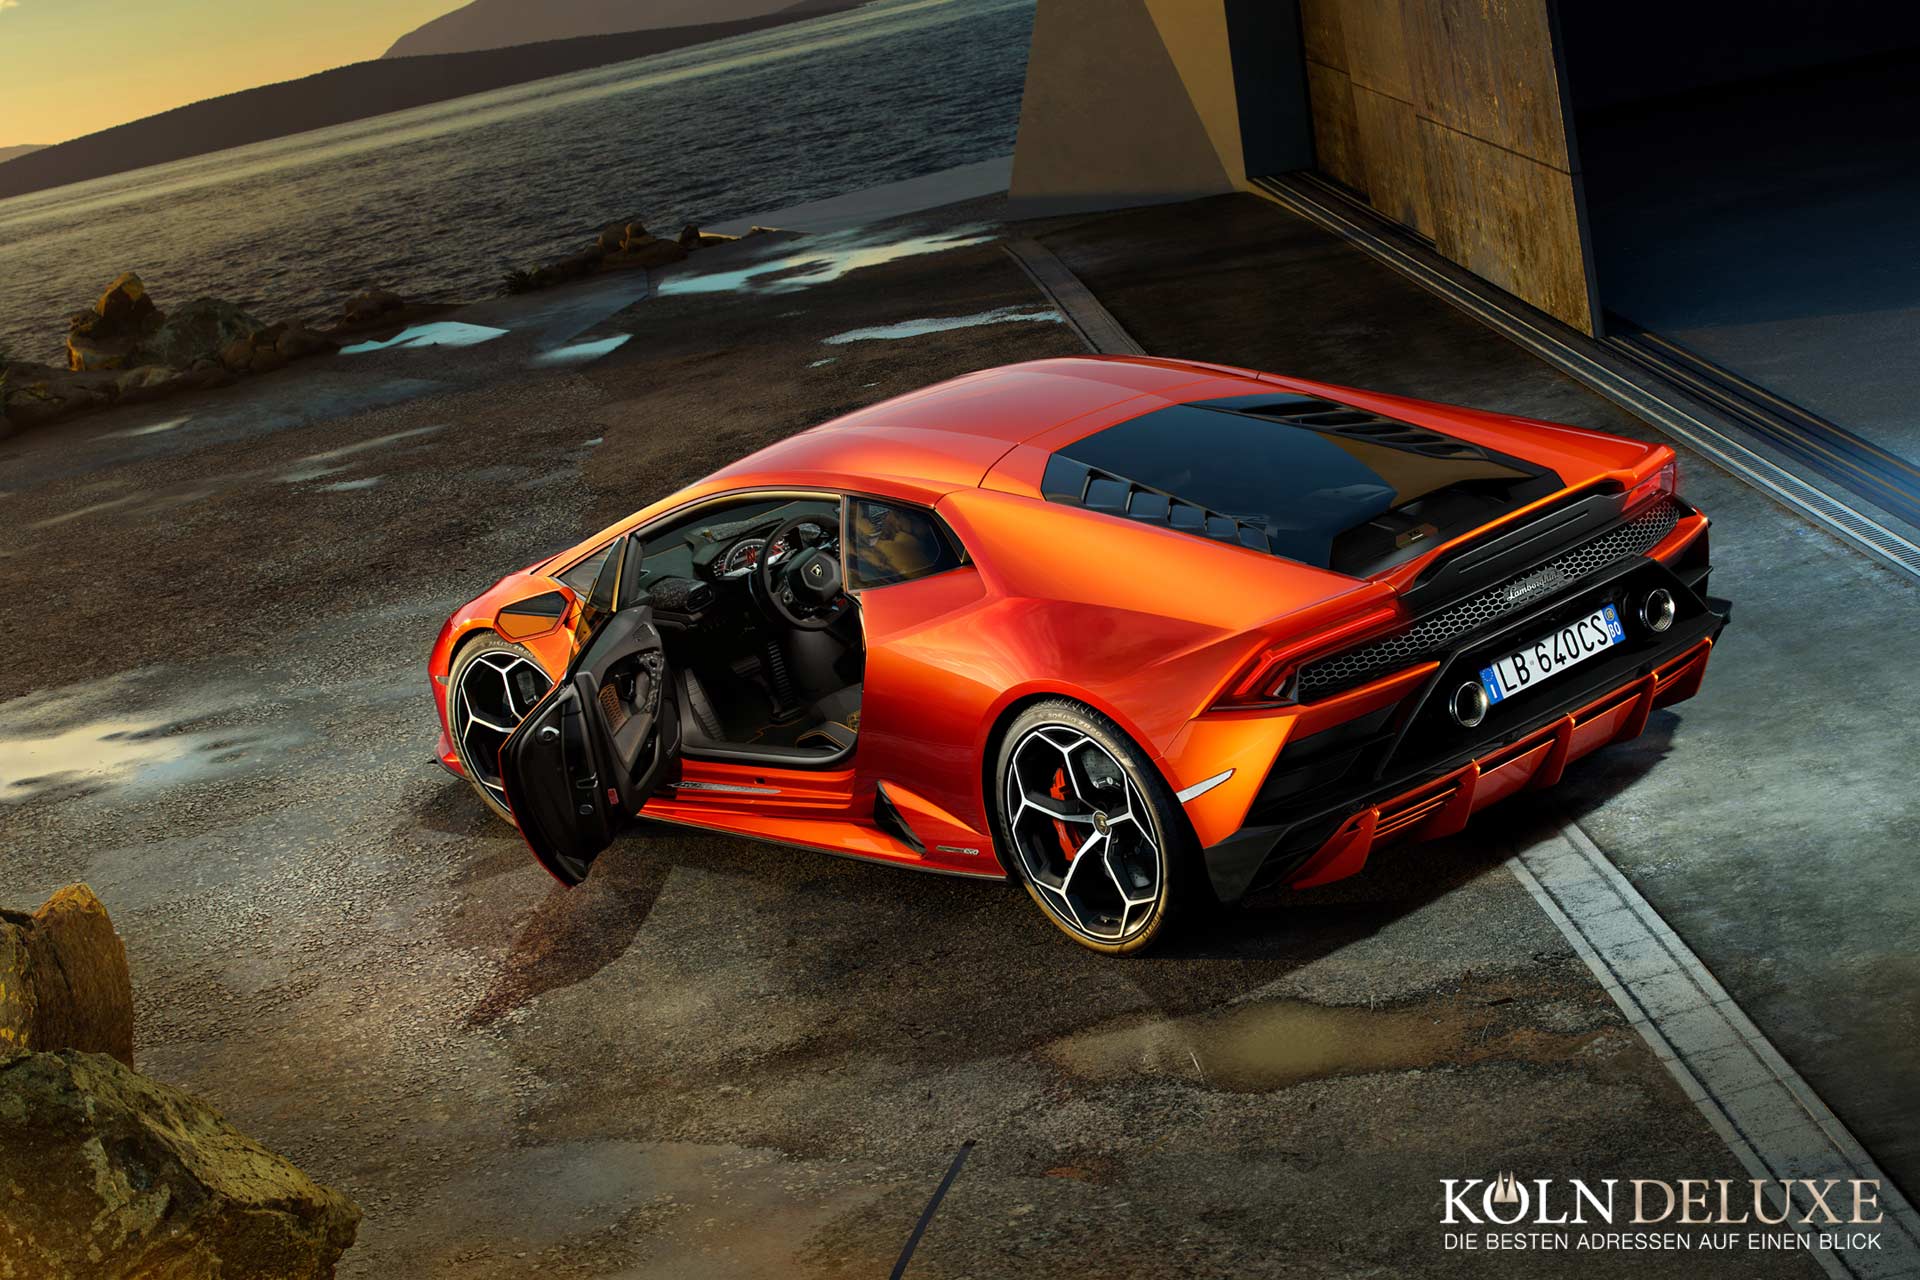 Der neue Lamborghini Huracán EVO: Technologische Innovationen für mehr Fahrspaß